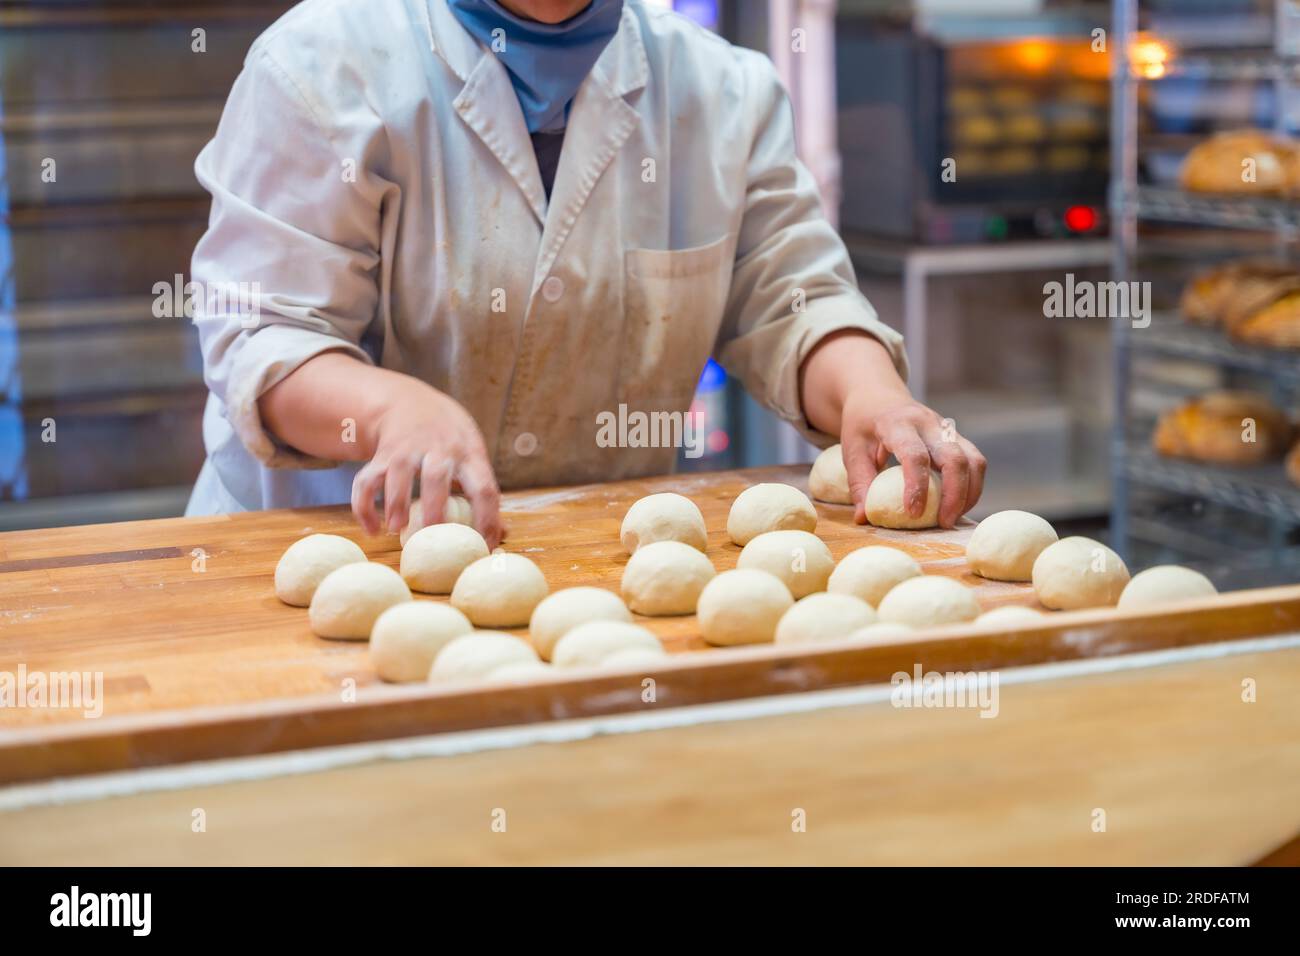 Femme employée de machine à pain dans l'atelier de boulangerie artisanale préparant la pâte dans un cercle Banque D'Images